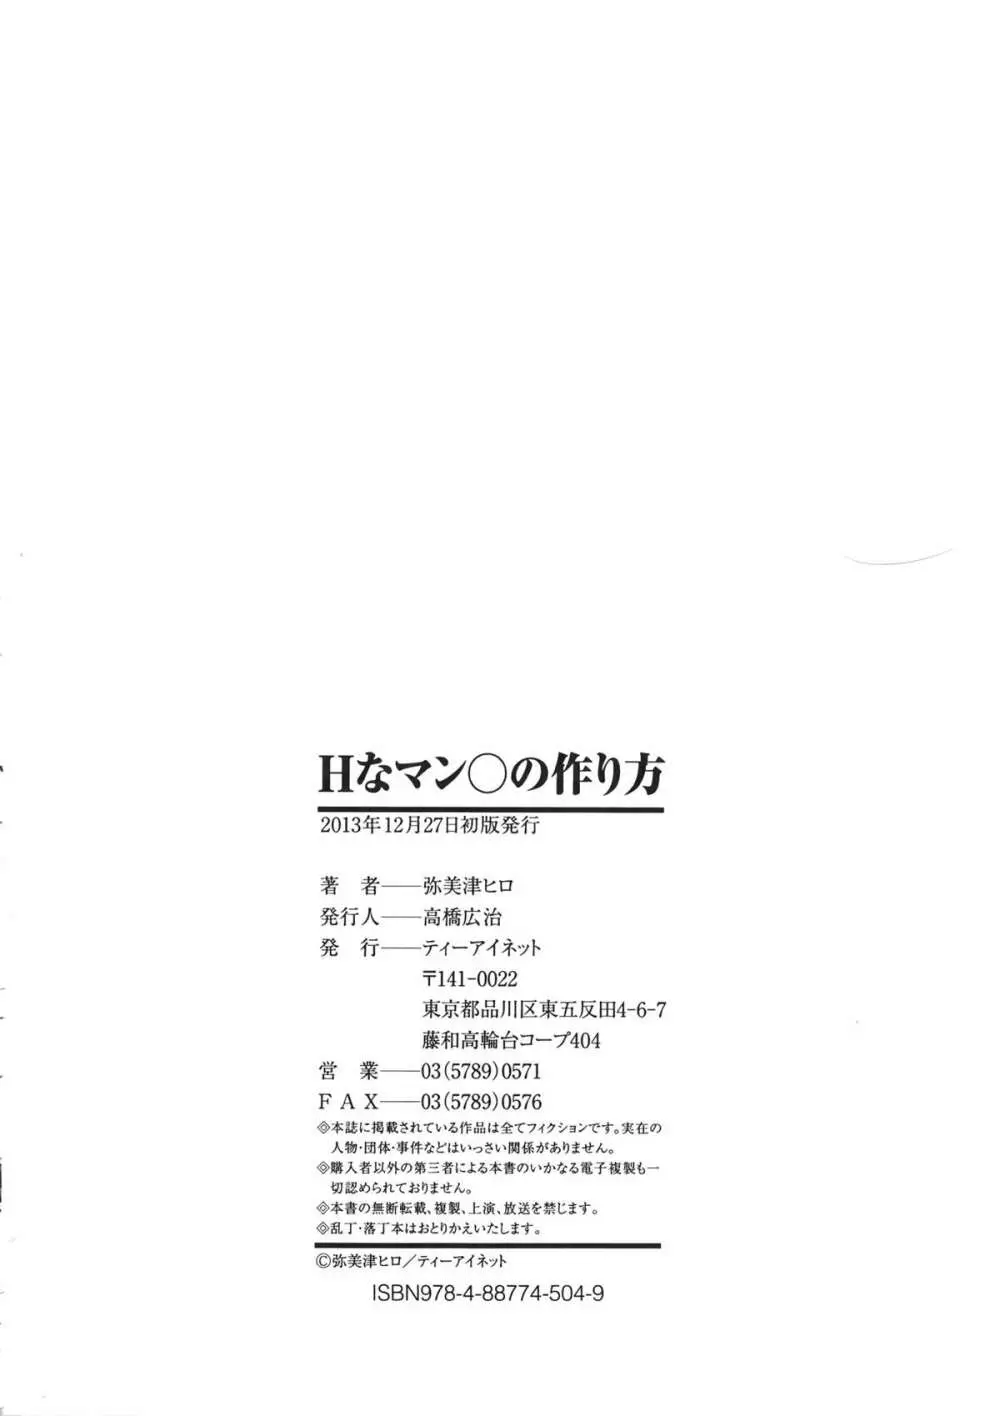 Hなマン○の作り方 + ラフイラスト集, 「複製原画」 224ページ